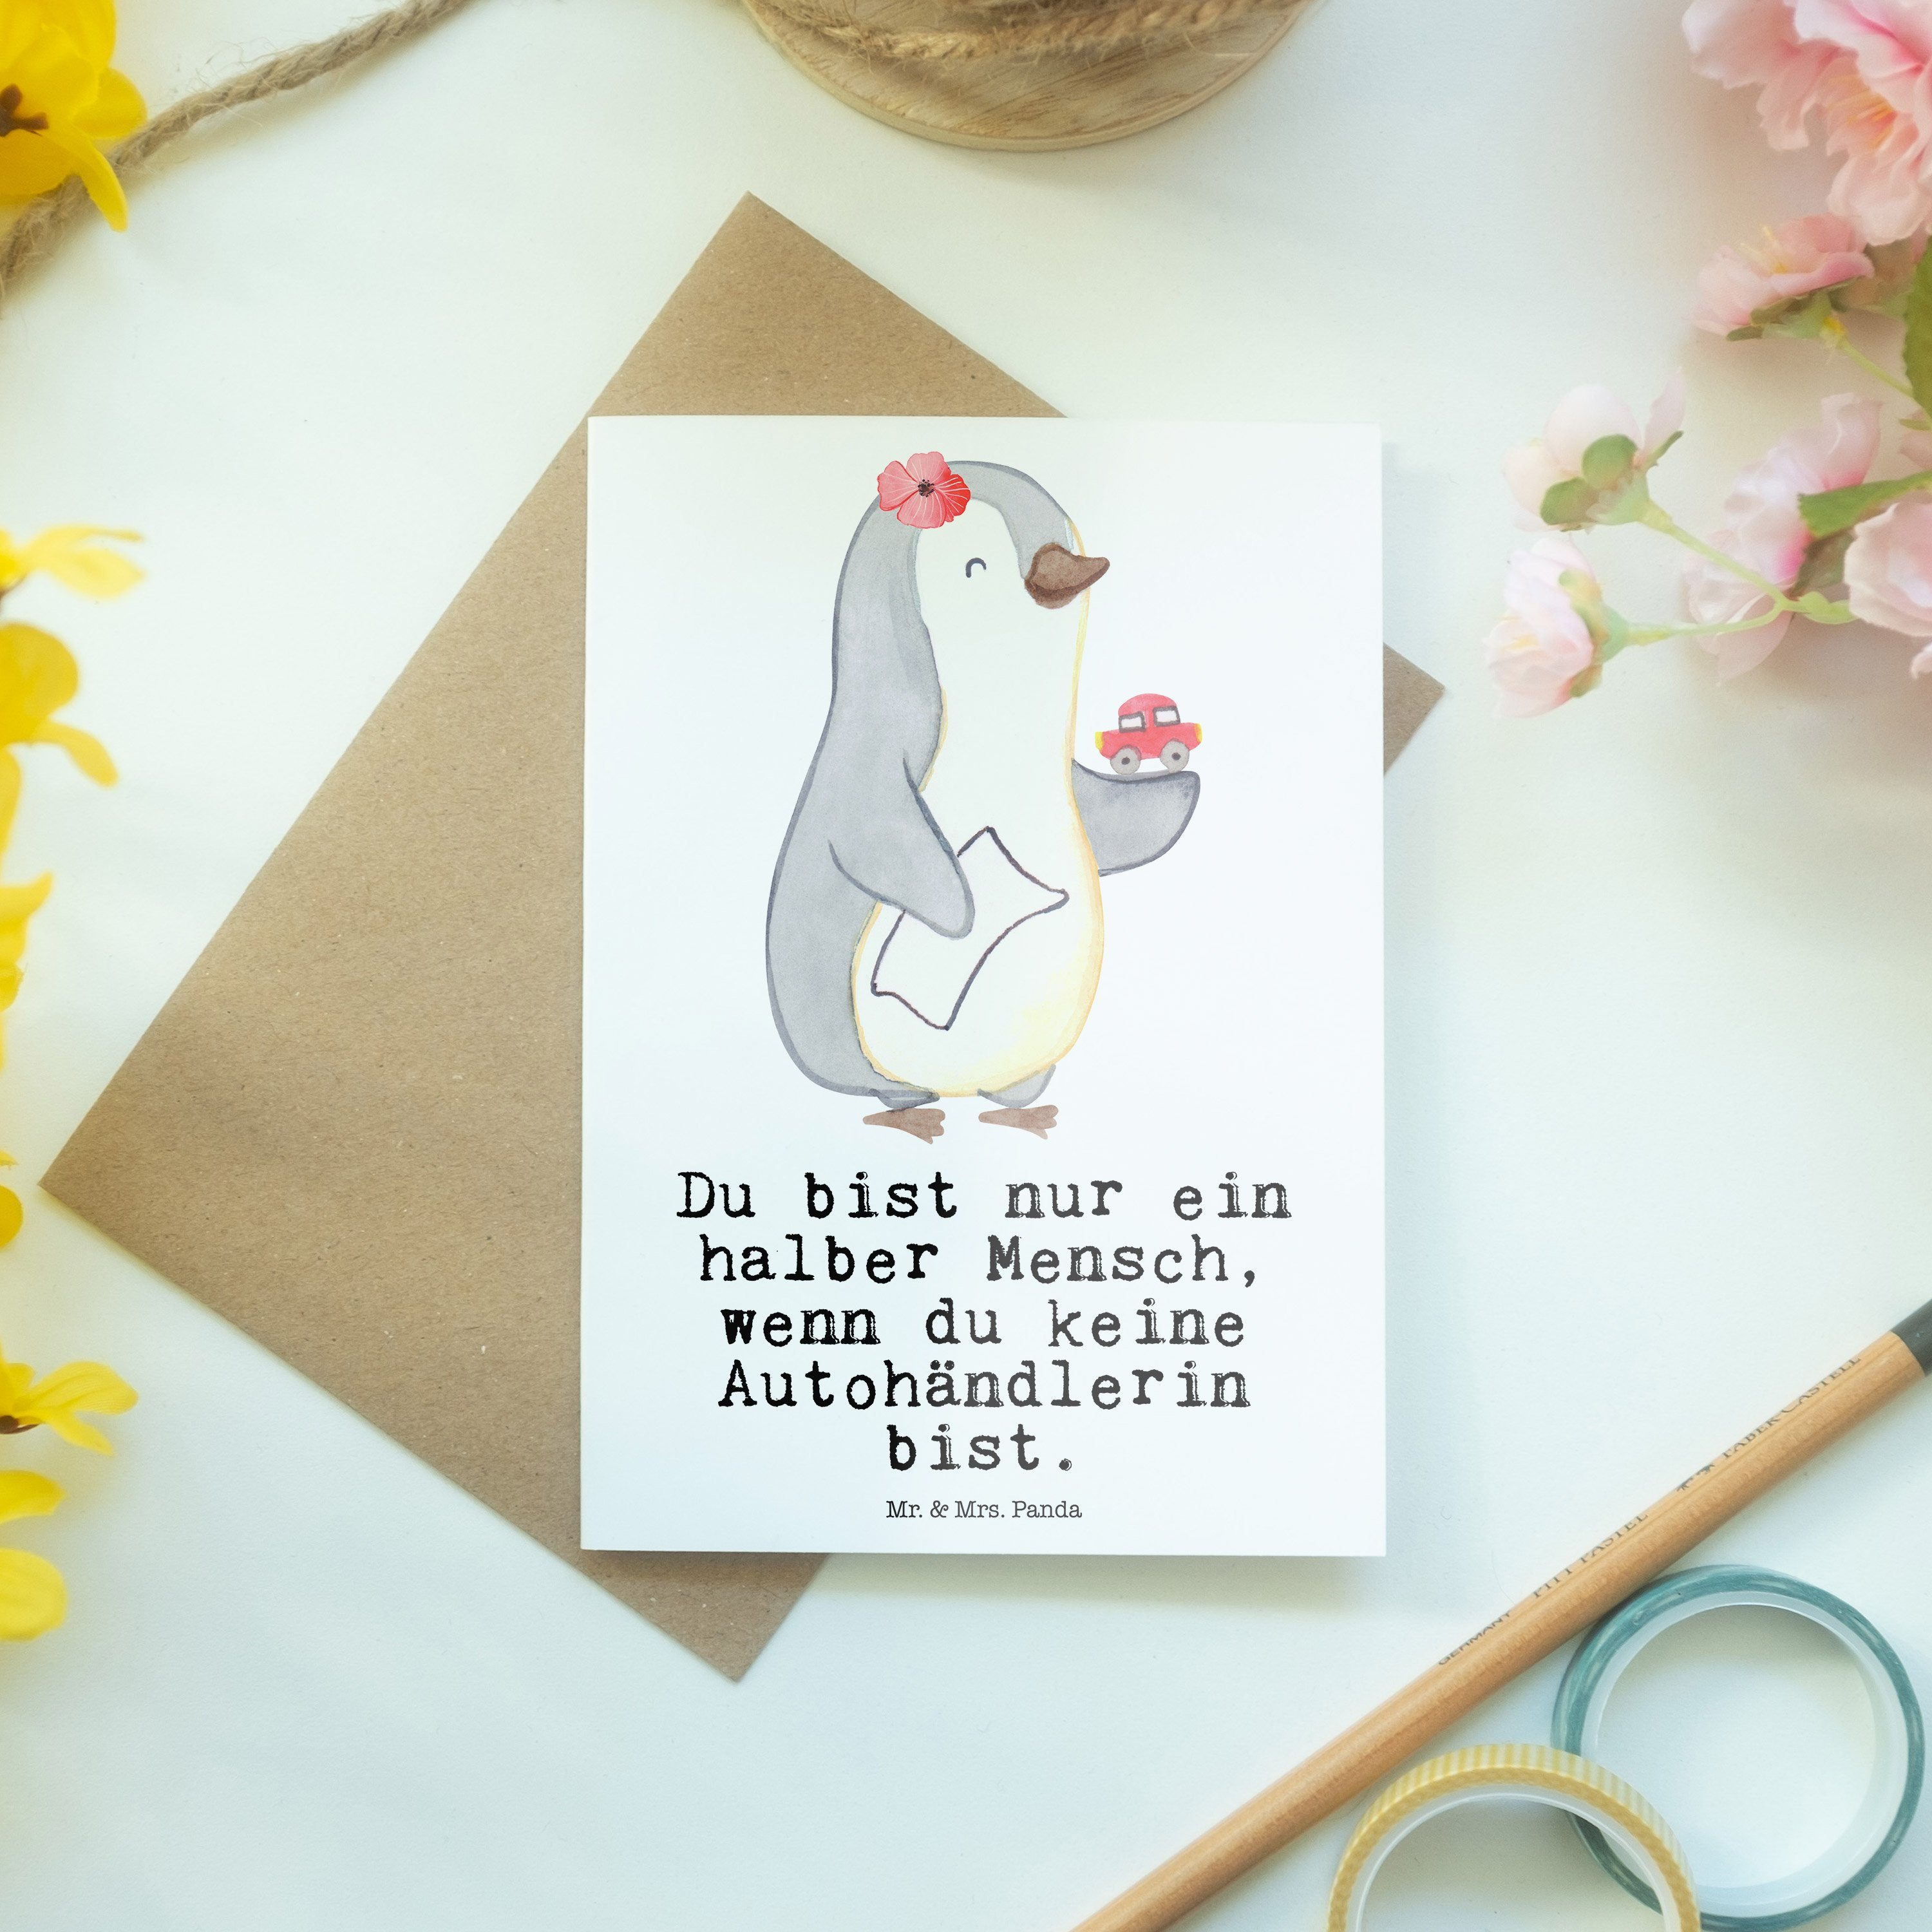 Mr. & Mrs. Panda Herz Grußkarte Weiß Autoverkäuf - mit Autohändlerin - Hochzeitskarte, Geschenk